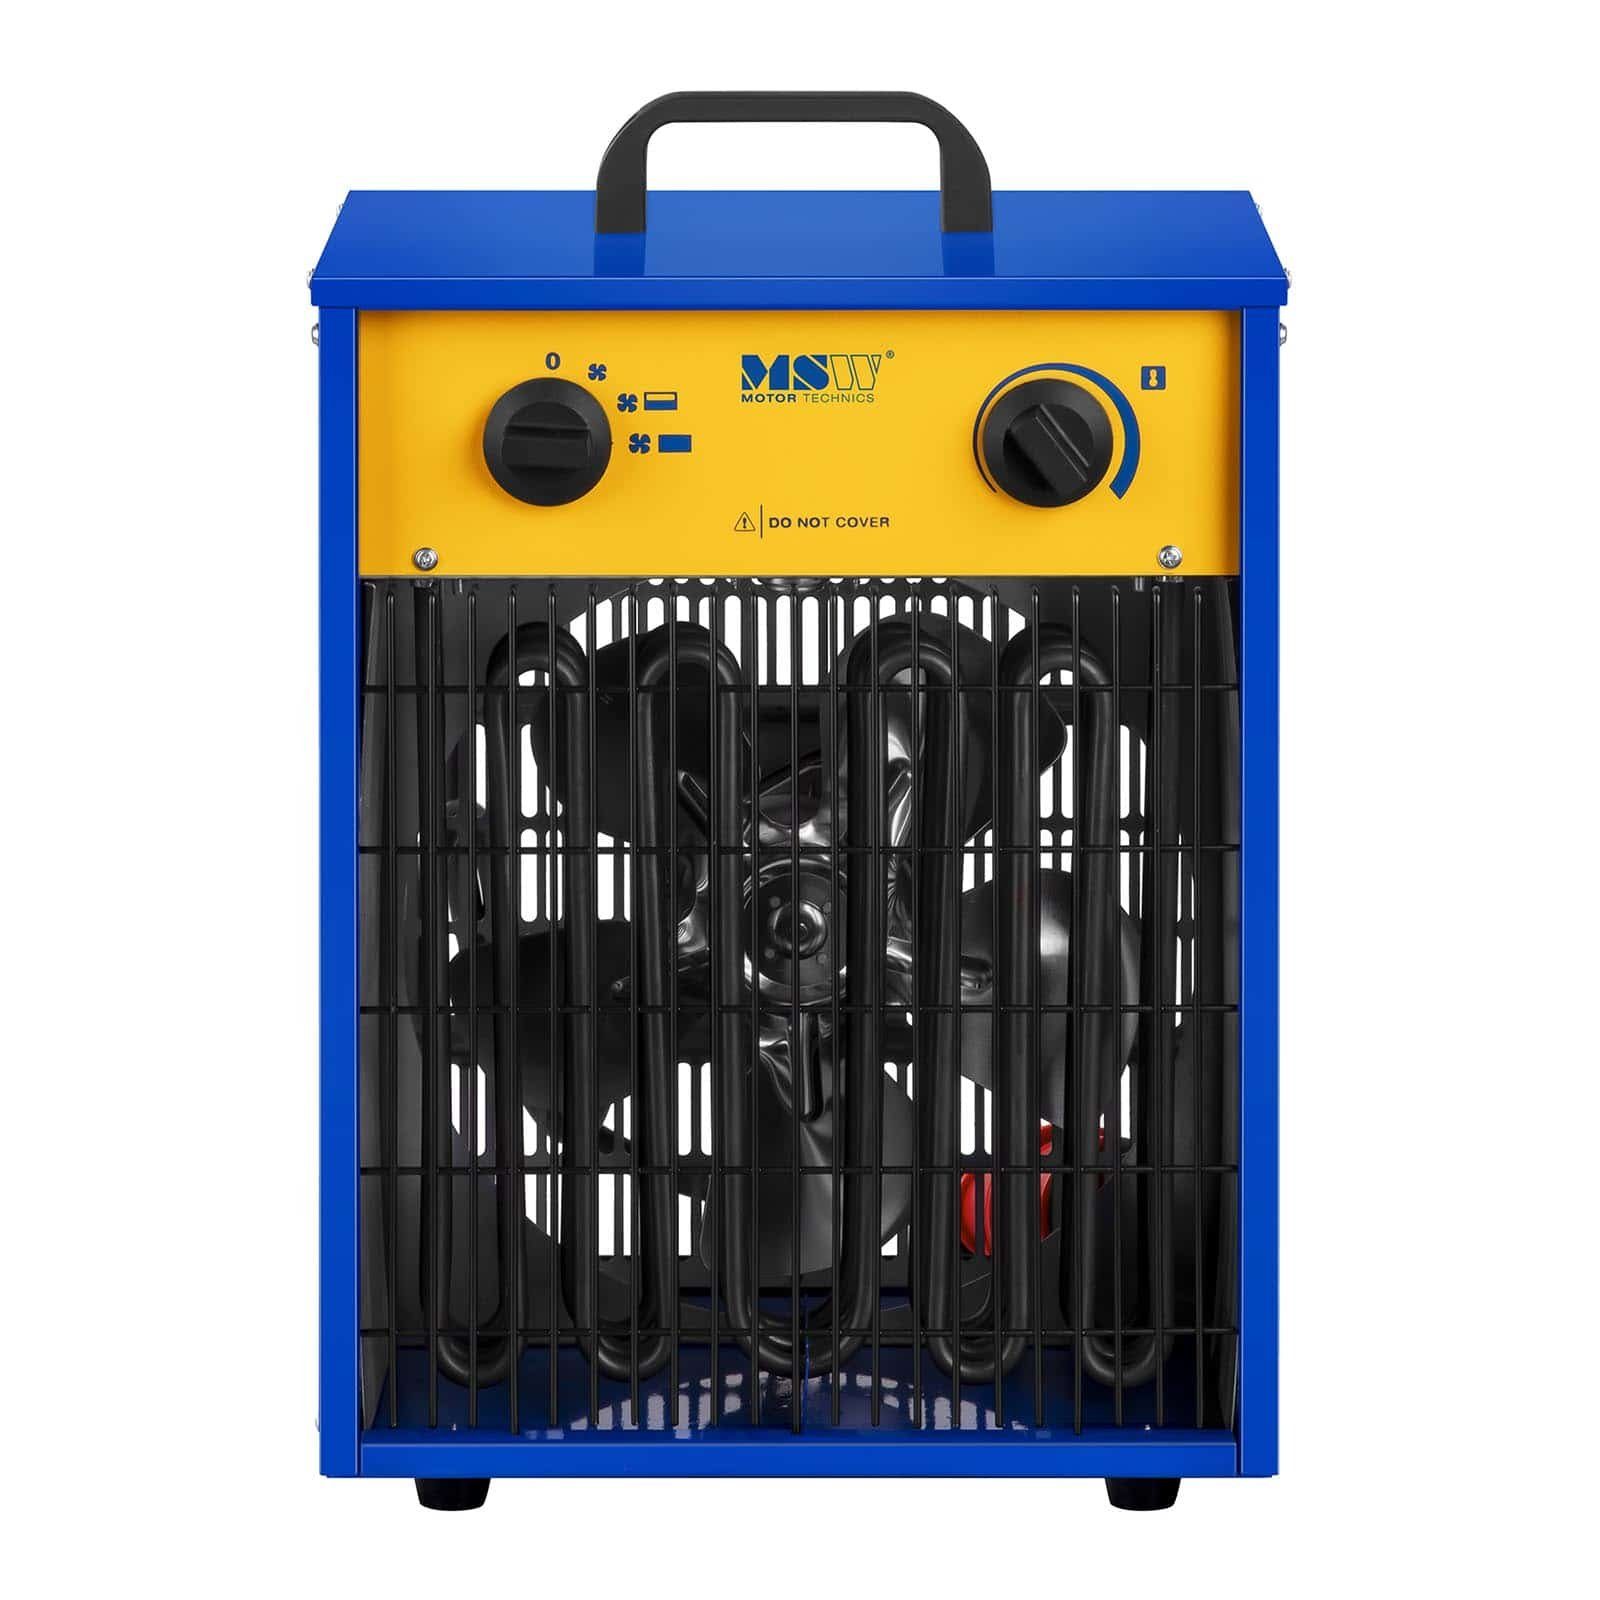 MSW Heizgerät MSW Elektroheizer 9.000 - Kühlfunktion 85 mit bis W 0 - °C